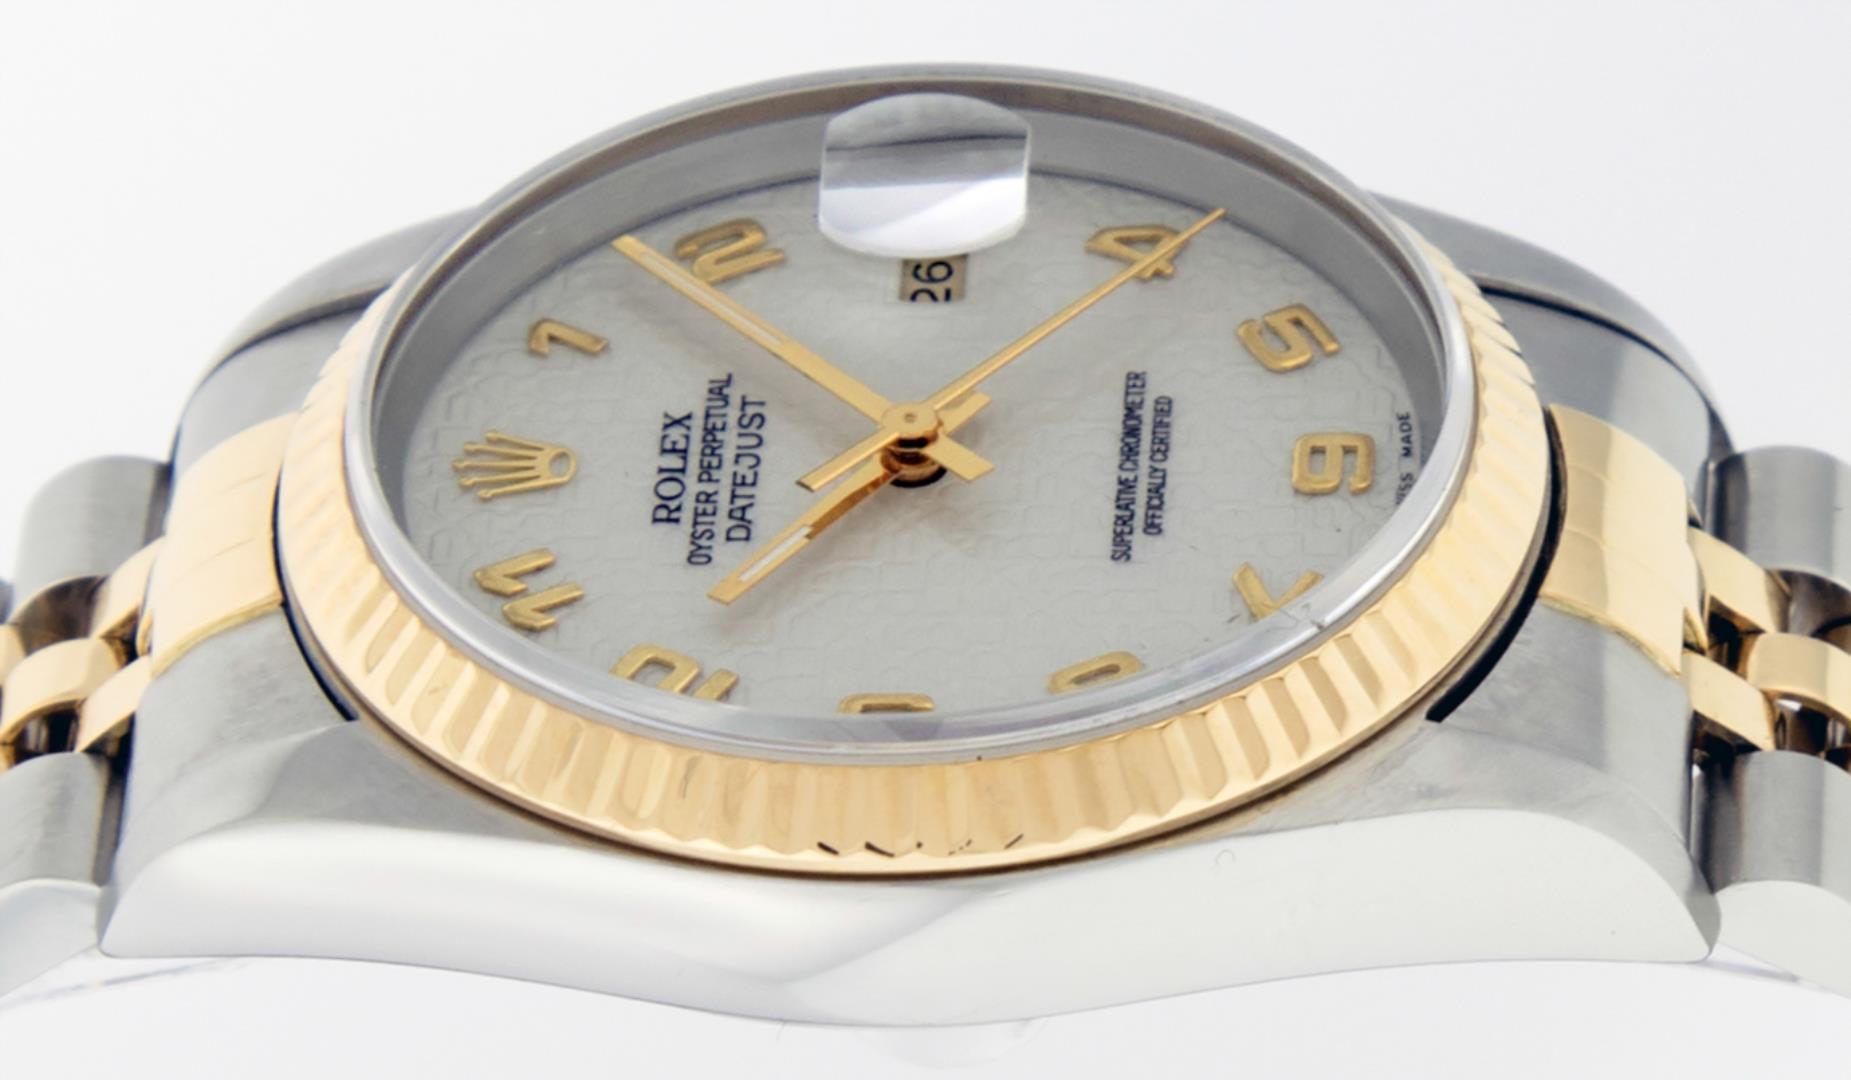 Rolex Men's Two Tone Cream Jubilee Datejust Wristwatch